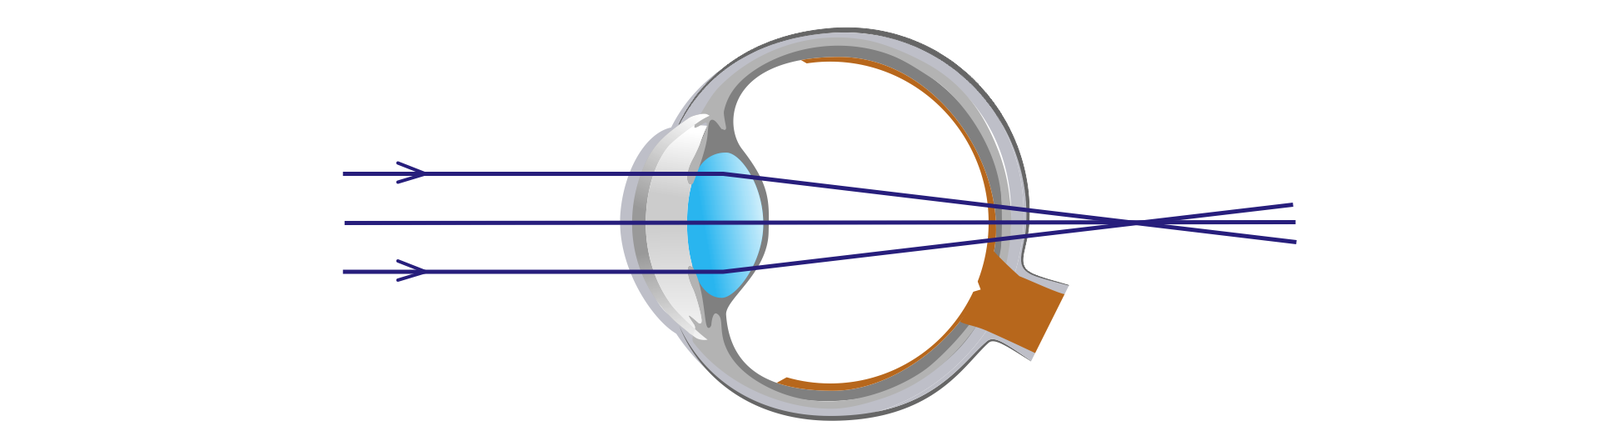 Na ilustracji zostało schematycznie pokazane oko jako kula. Przed okiem widzimy równoległe do siebie promienie światła w postaci odcinków. W momencie przejścia przez soczewkę oka ulegają one załamaniu i przecinają się w jednym punkcie znajdującym się za siatkówką oka. Wadę w której promienie przecinają się za siatkówką nazywamy dalekowzrocznością.